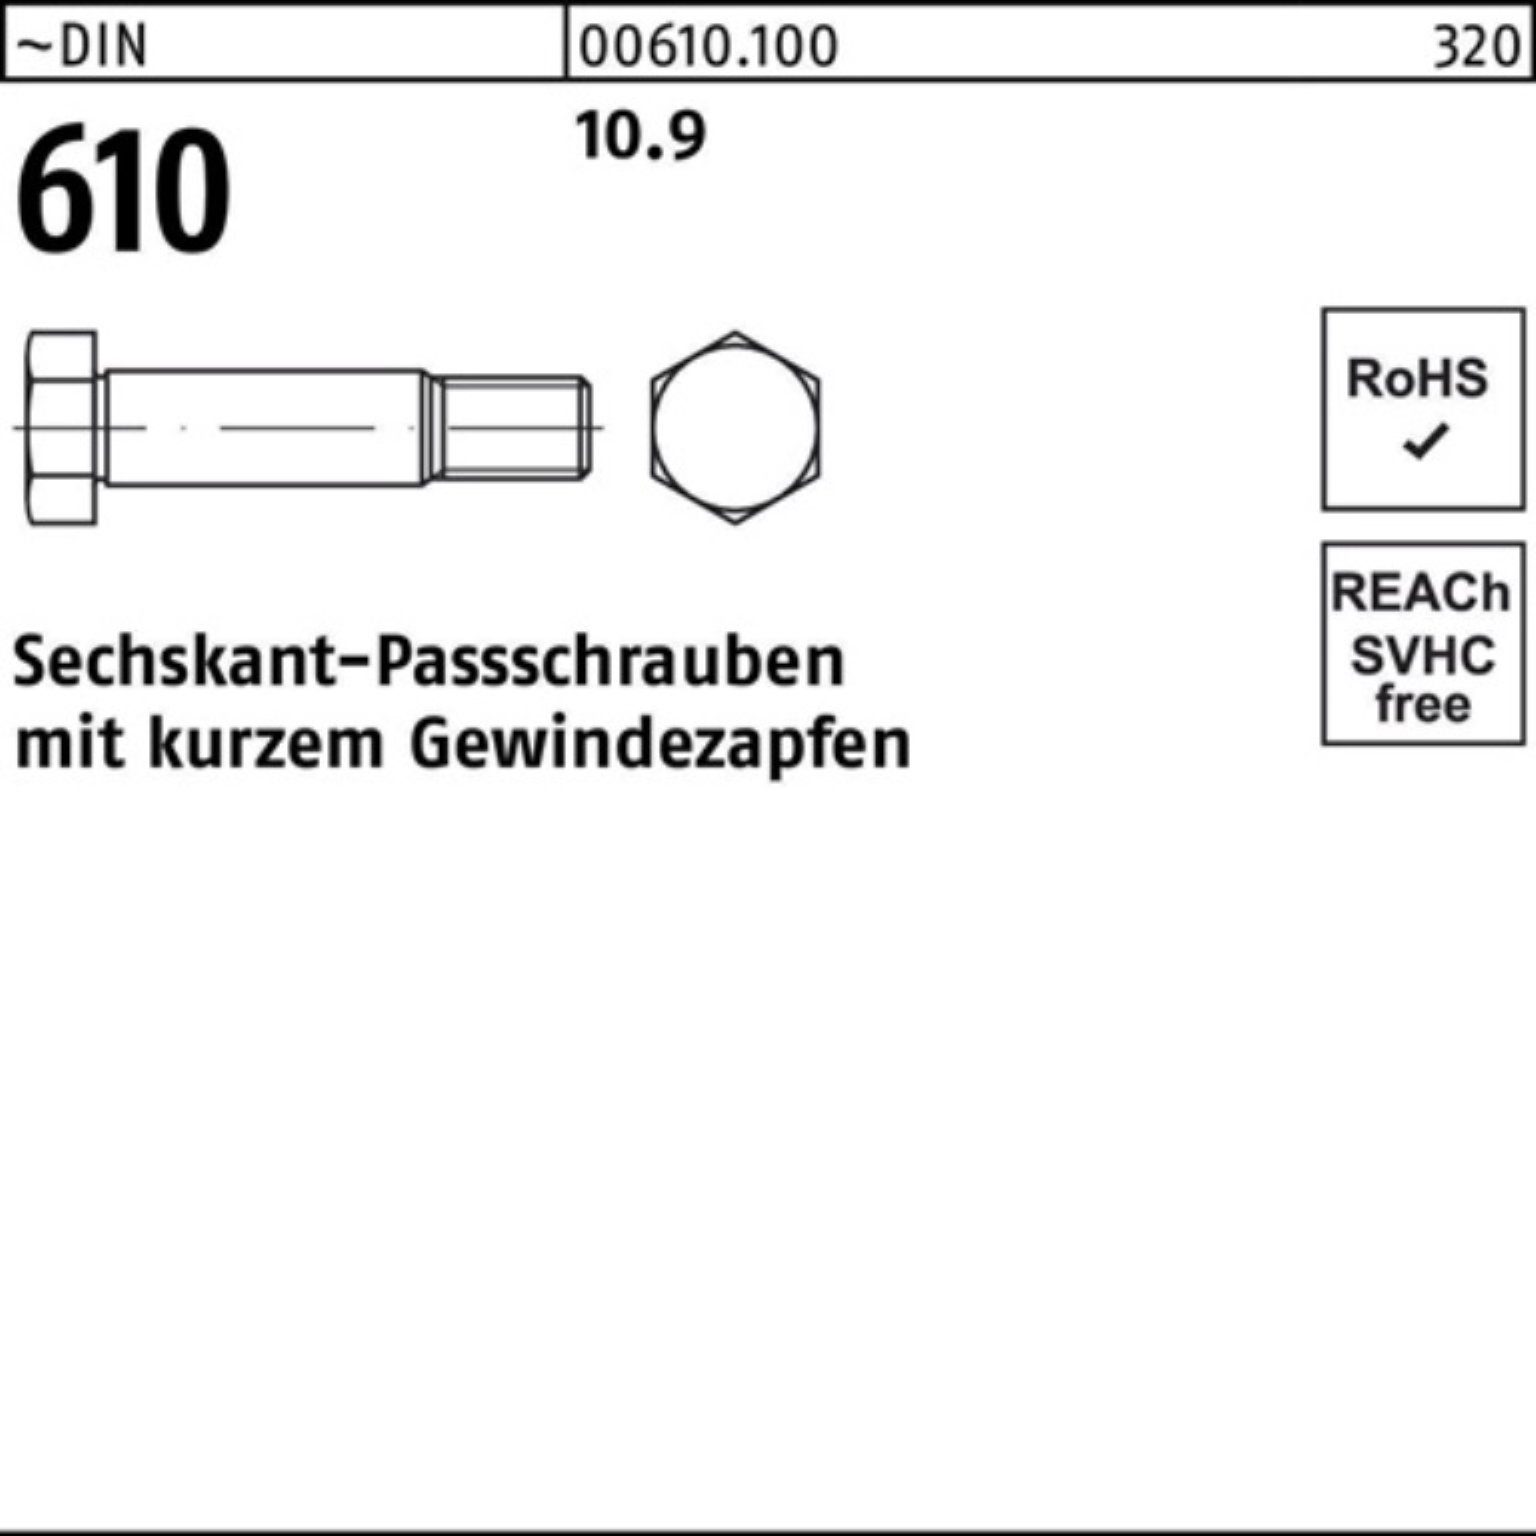 610 Sechskantpassschraube Pack kurzem 130 DIN M24x Schraube Reyher Gewindezapfen 100er